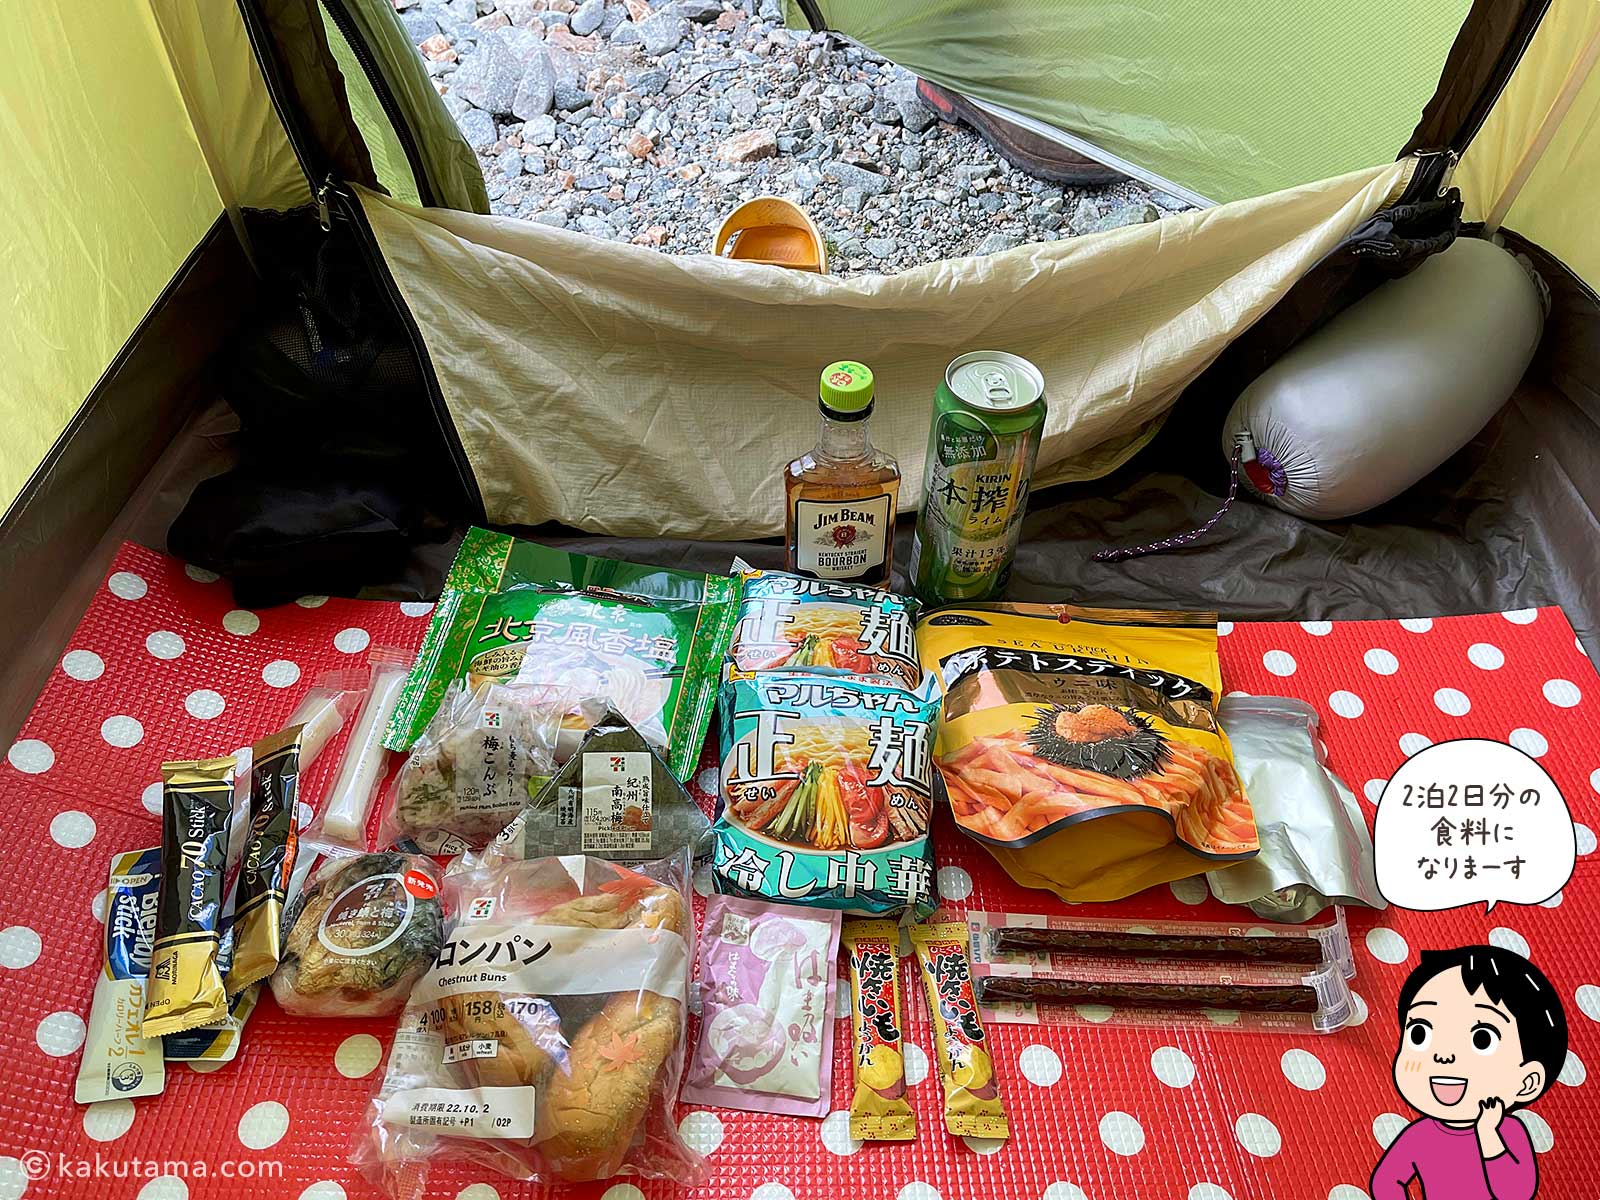 テント泊時の食料の写真と登山者のイラスト